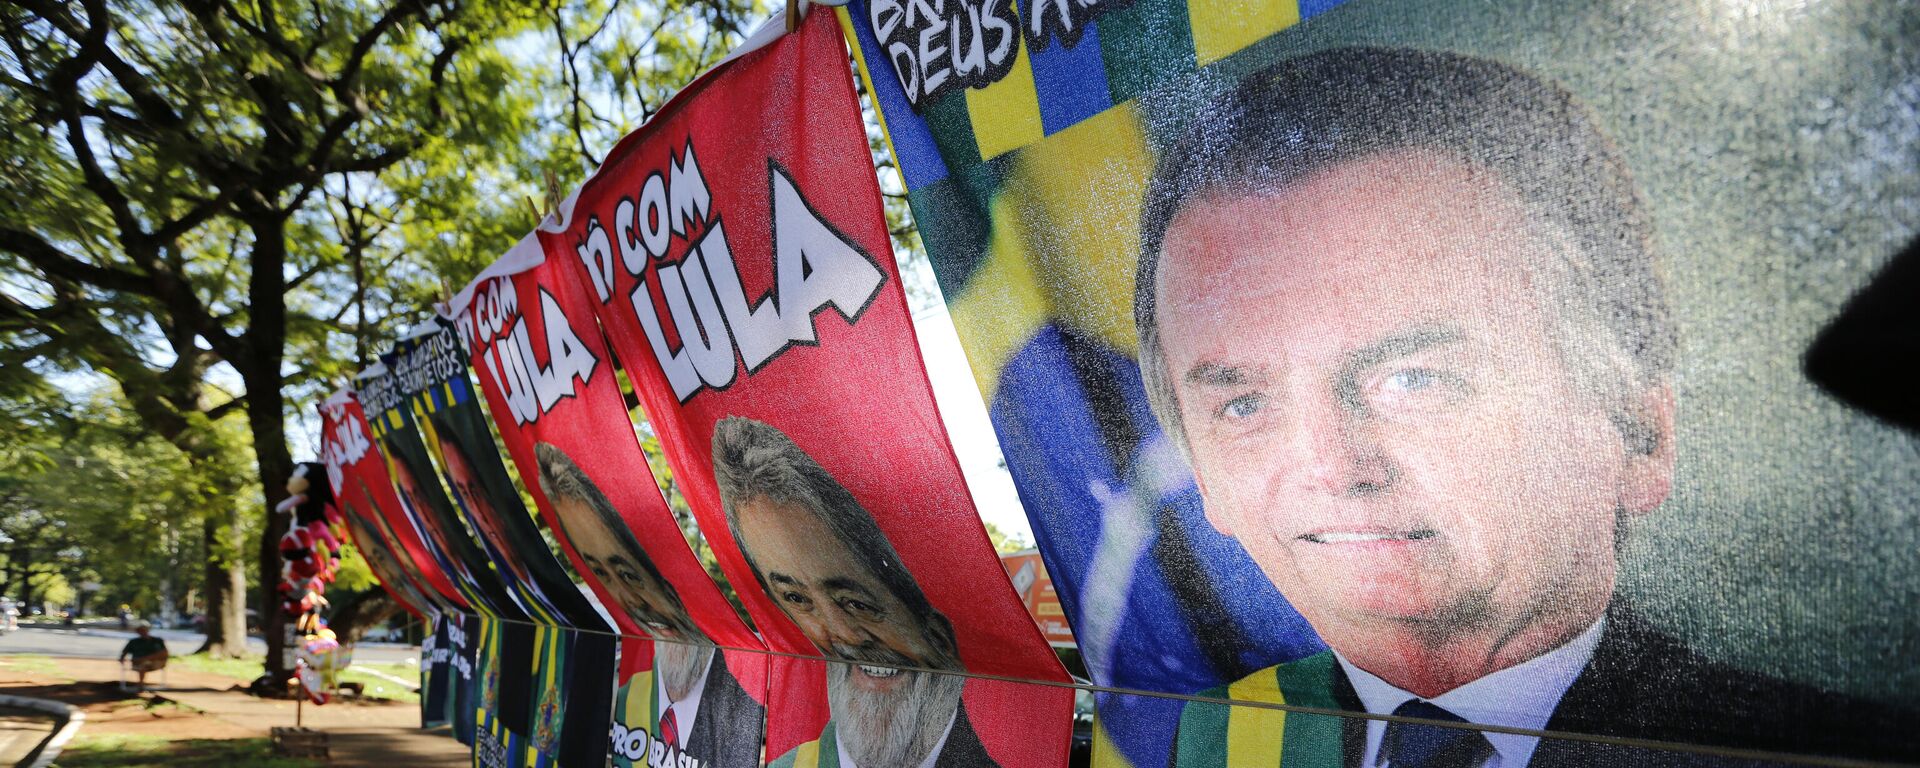 Vendedor ambulante vende toalhas com fotos do presidente Jair Bolsonaro (PL) e do ex-presidente Luiz Inácio Lula da Silva (PT) em Foz do Iguaçu (PR), em 11 de fevereiro de 2022 - Sputnik Brasil, 1920, 14.10.2022